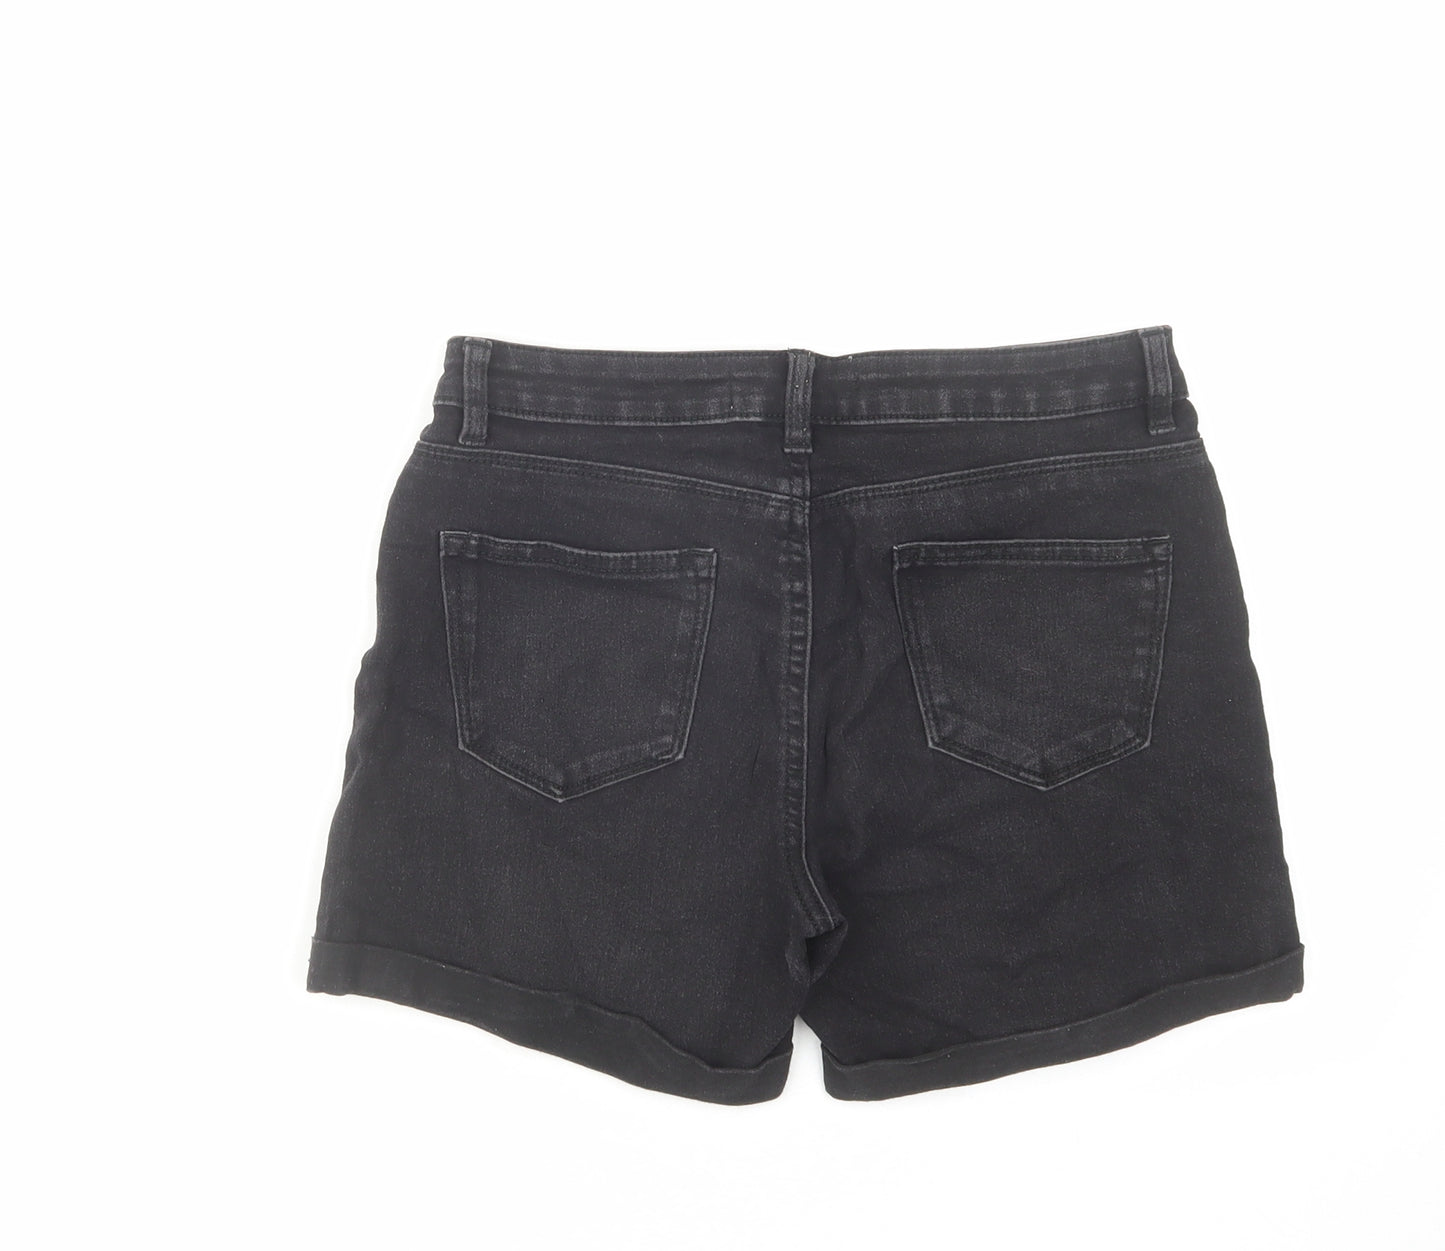 Denim & Co. Womens Black Cotton Boyfriend Shorts Size 8 L4 in Regular Zip